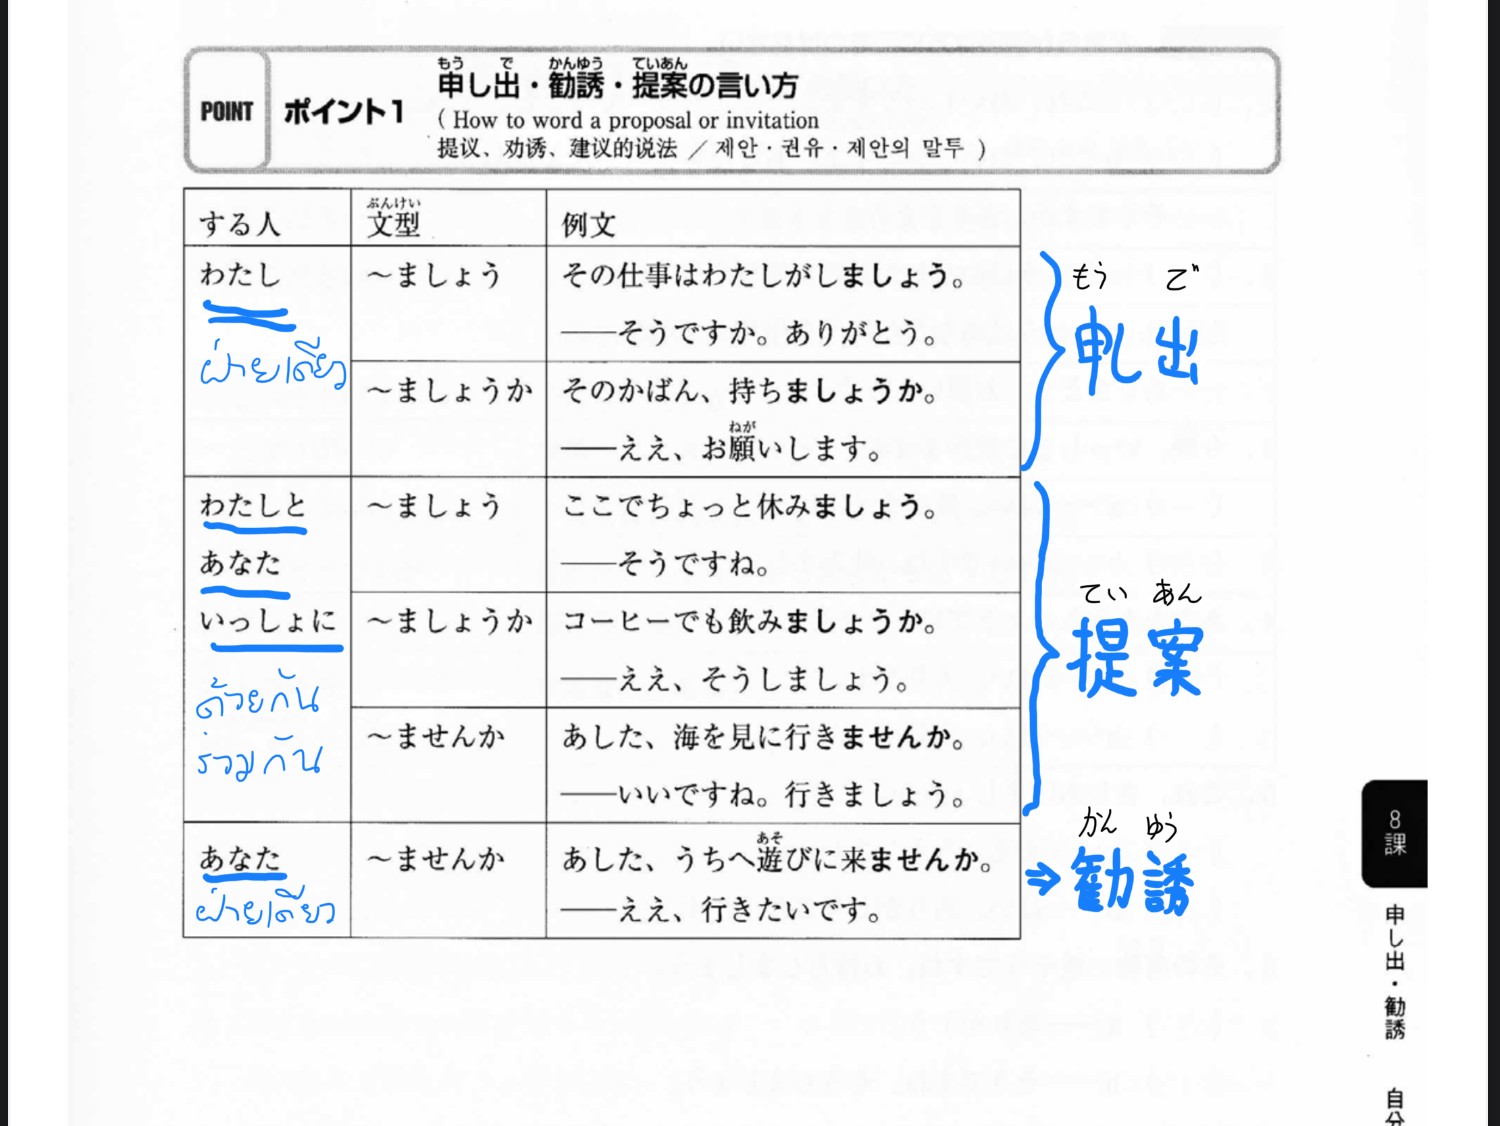 คุณคิดว่าประโยคนี้มีความหมายยังไง 日本語を勉強しましょうか。มันคือการชักชวนให้มาเรียน ภาษาญี่ปุ่นรึเปล่า? - Pantip